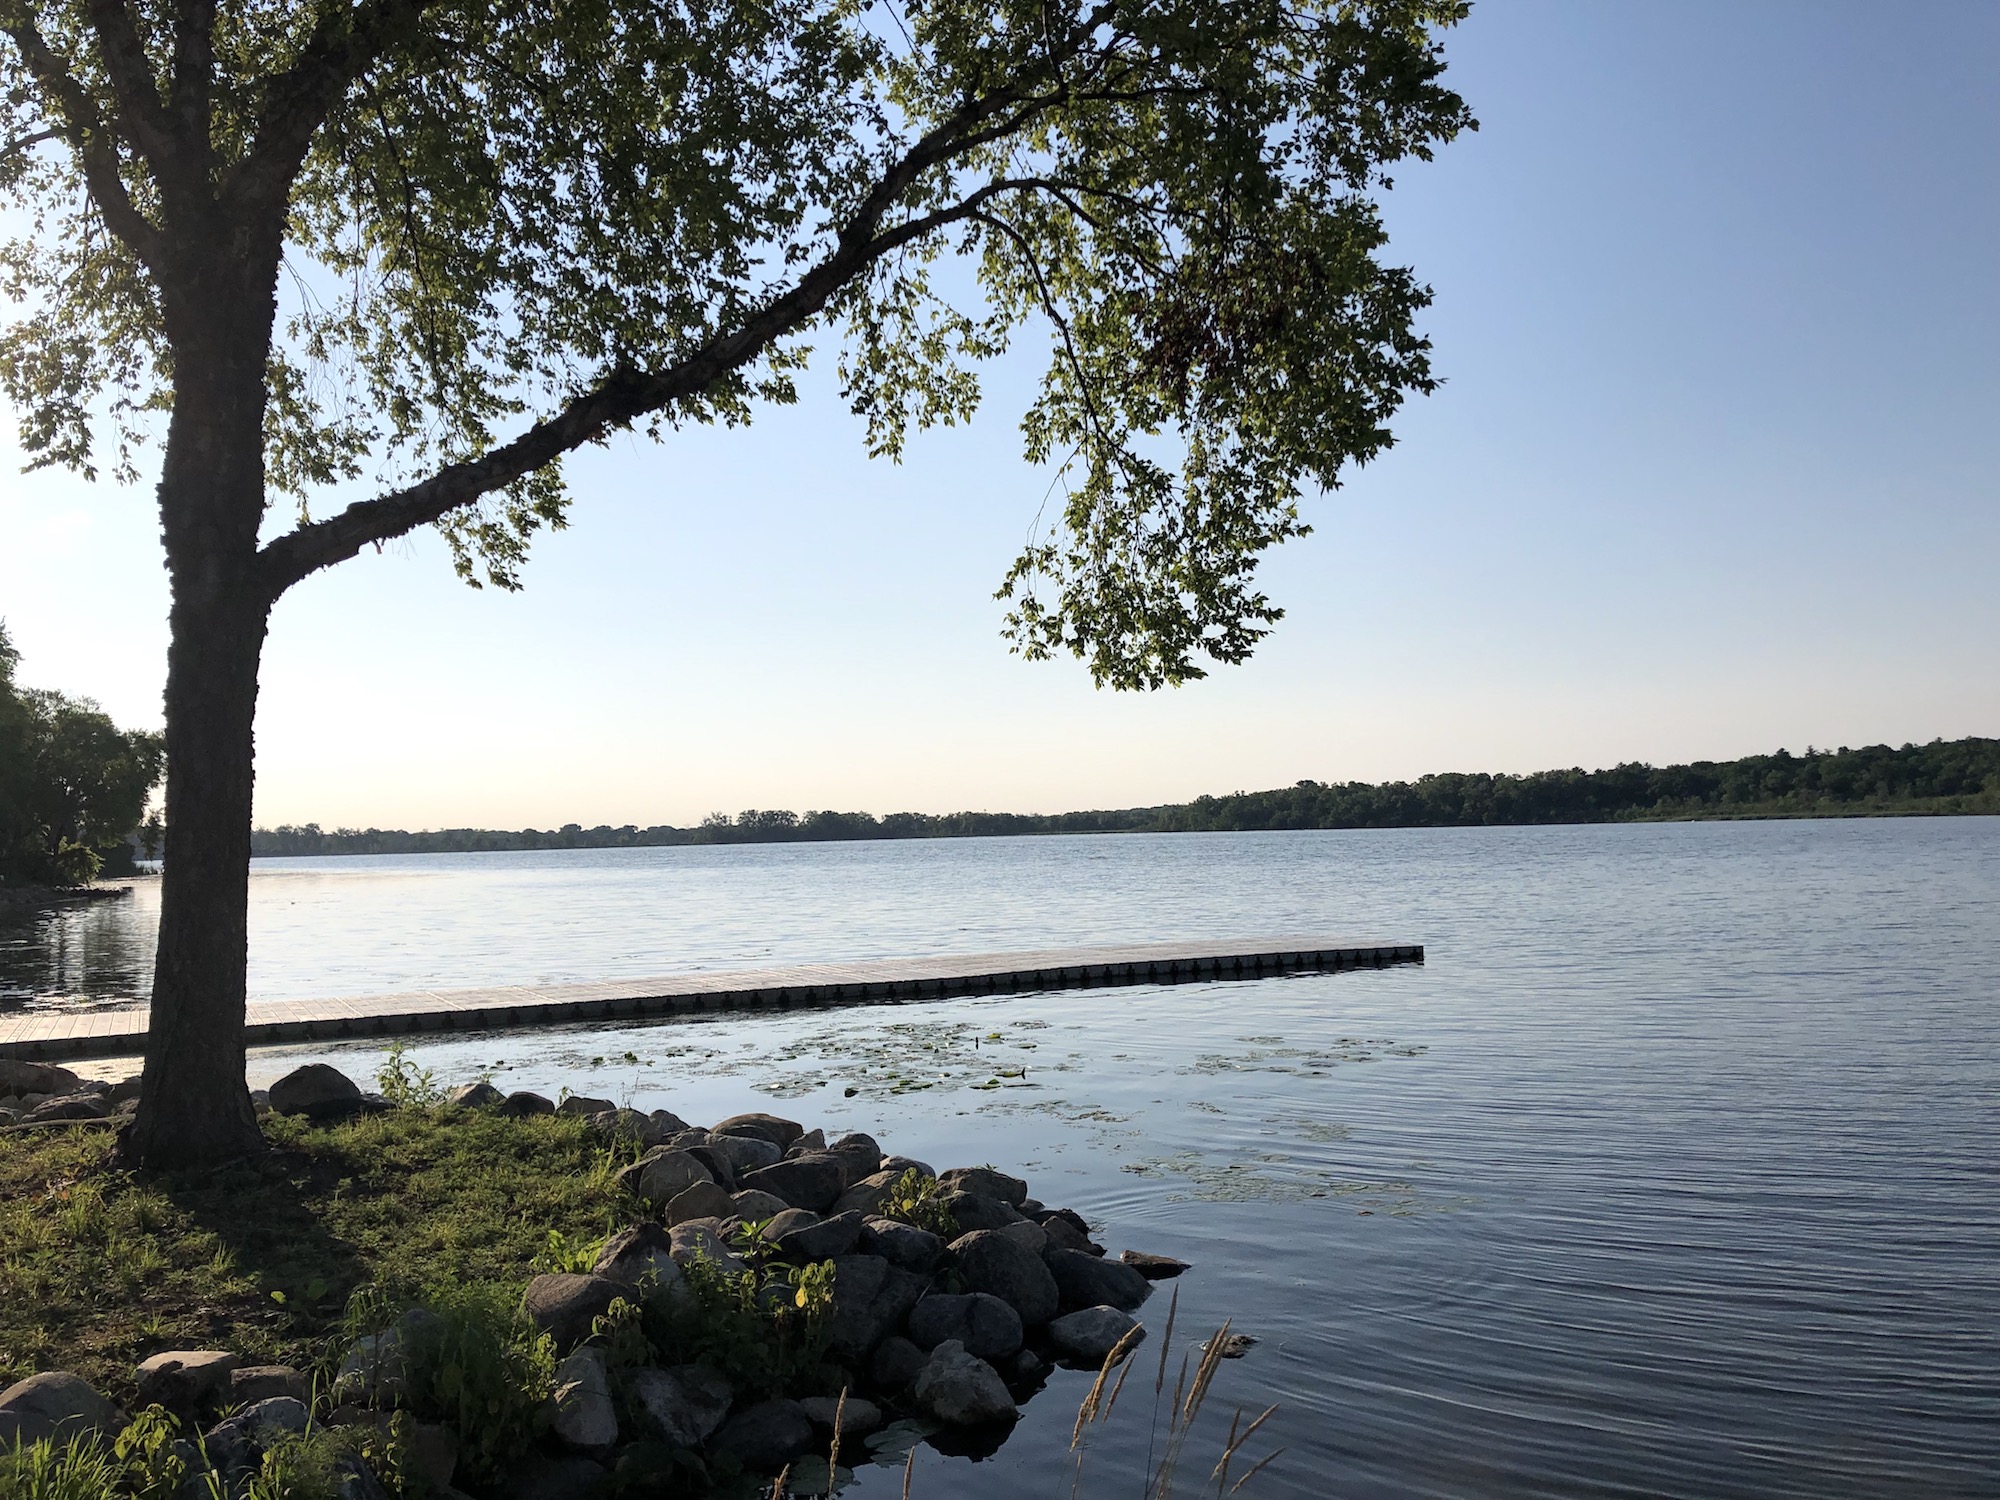 Lake Wingra on July 7, 2019.